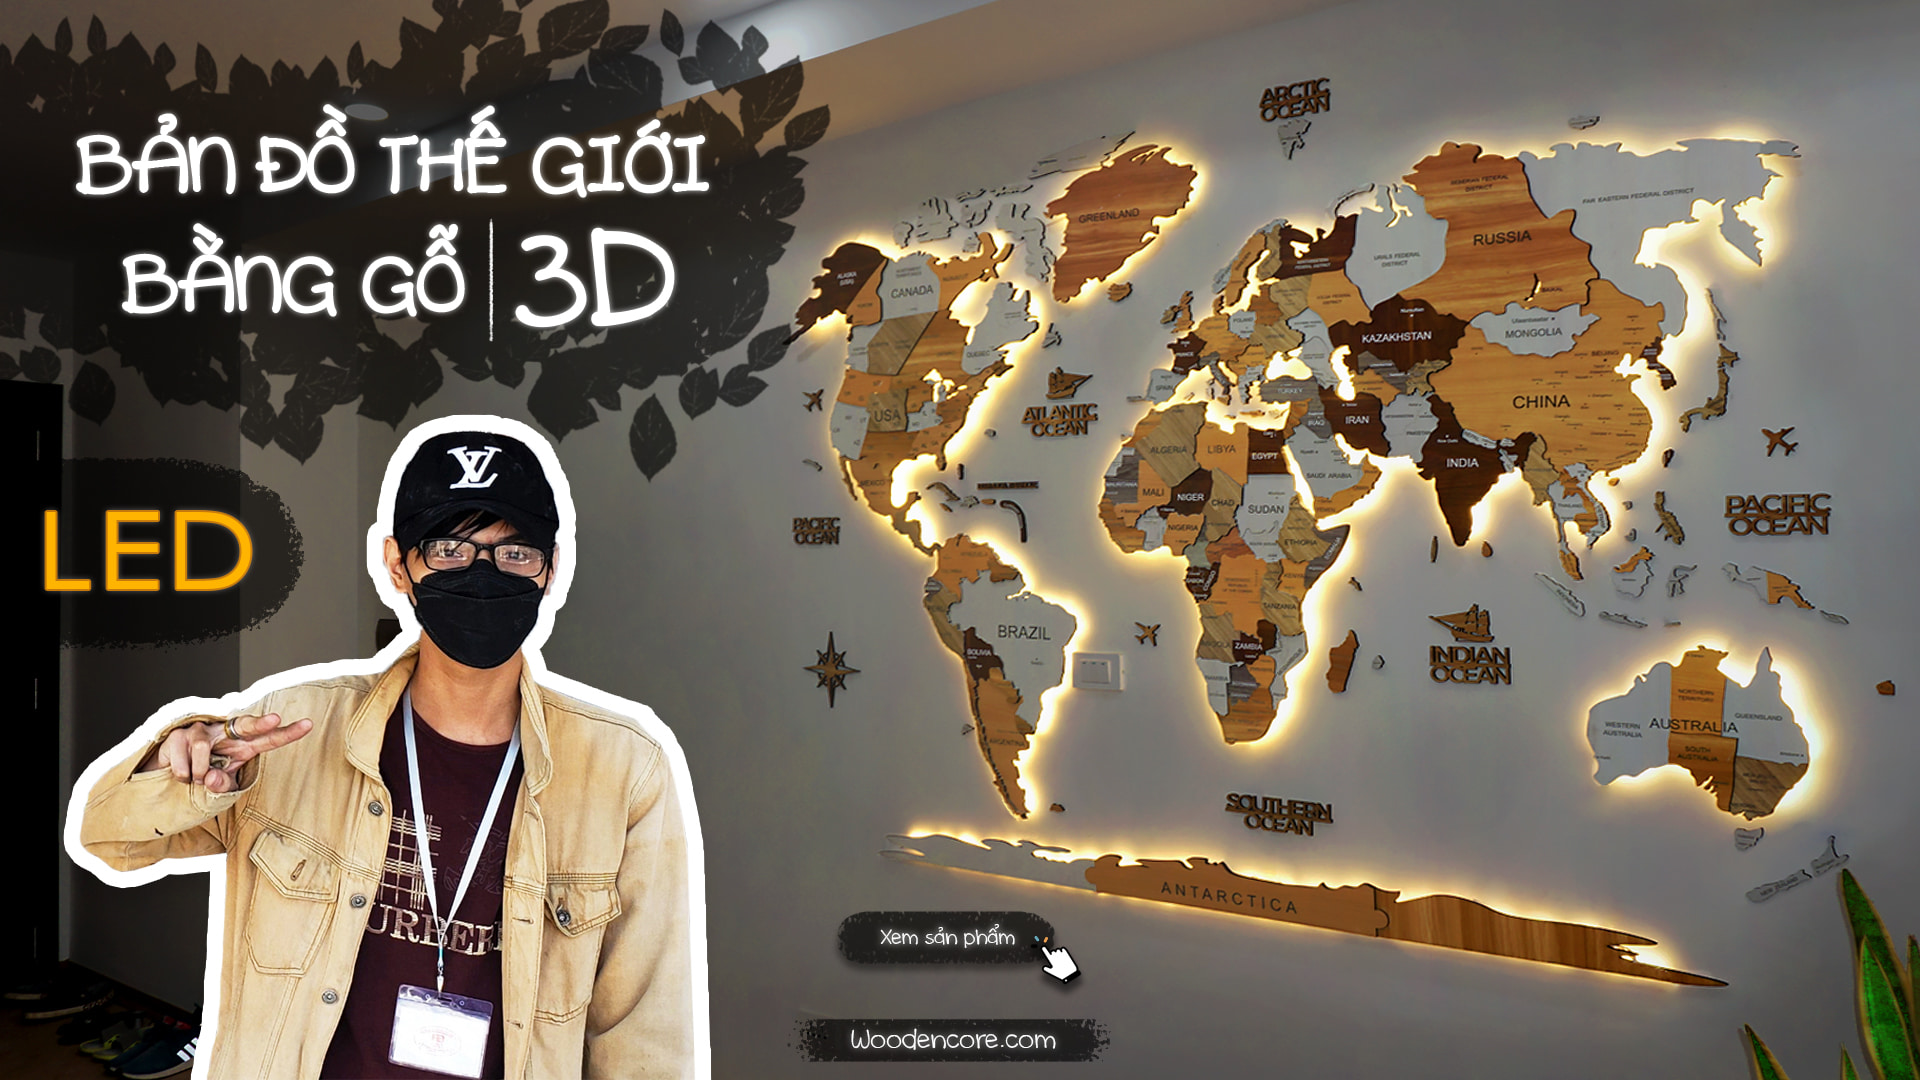 Bản Đồ Gỗ 3D Trang Trí Decor - Bản Đồ 3D Thế Giới Và Việt Nam